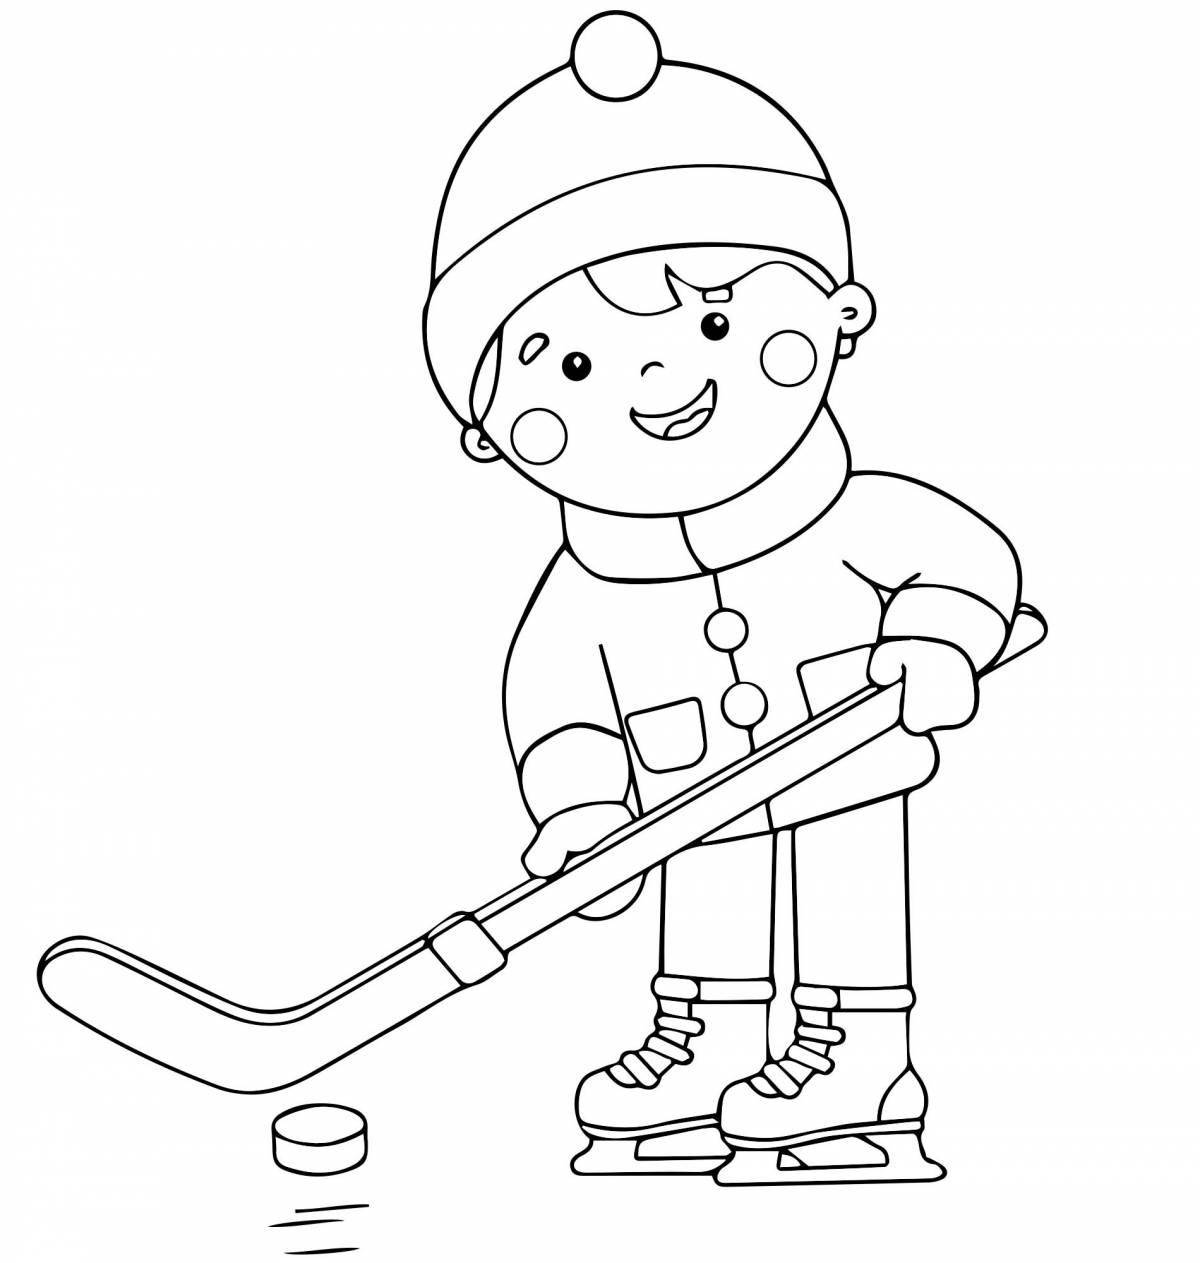 Веселая раскраска для детей о зимних видах спорта